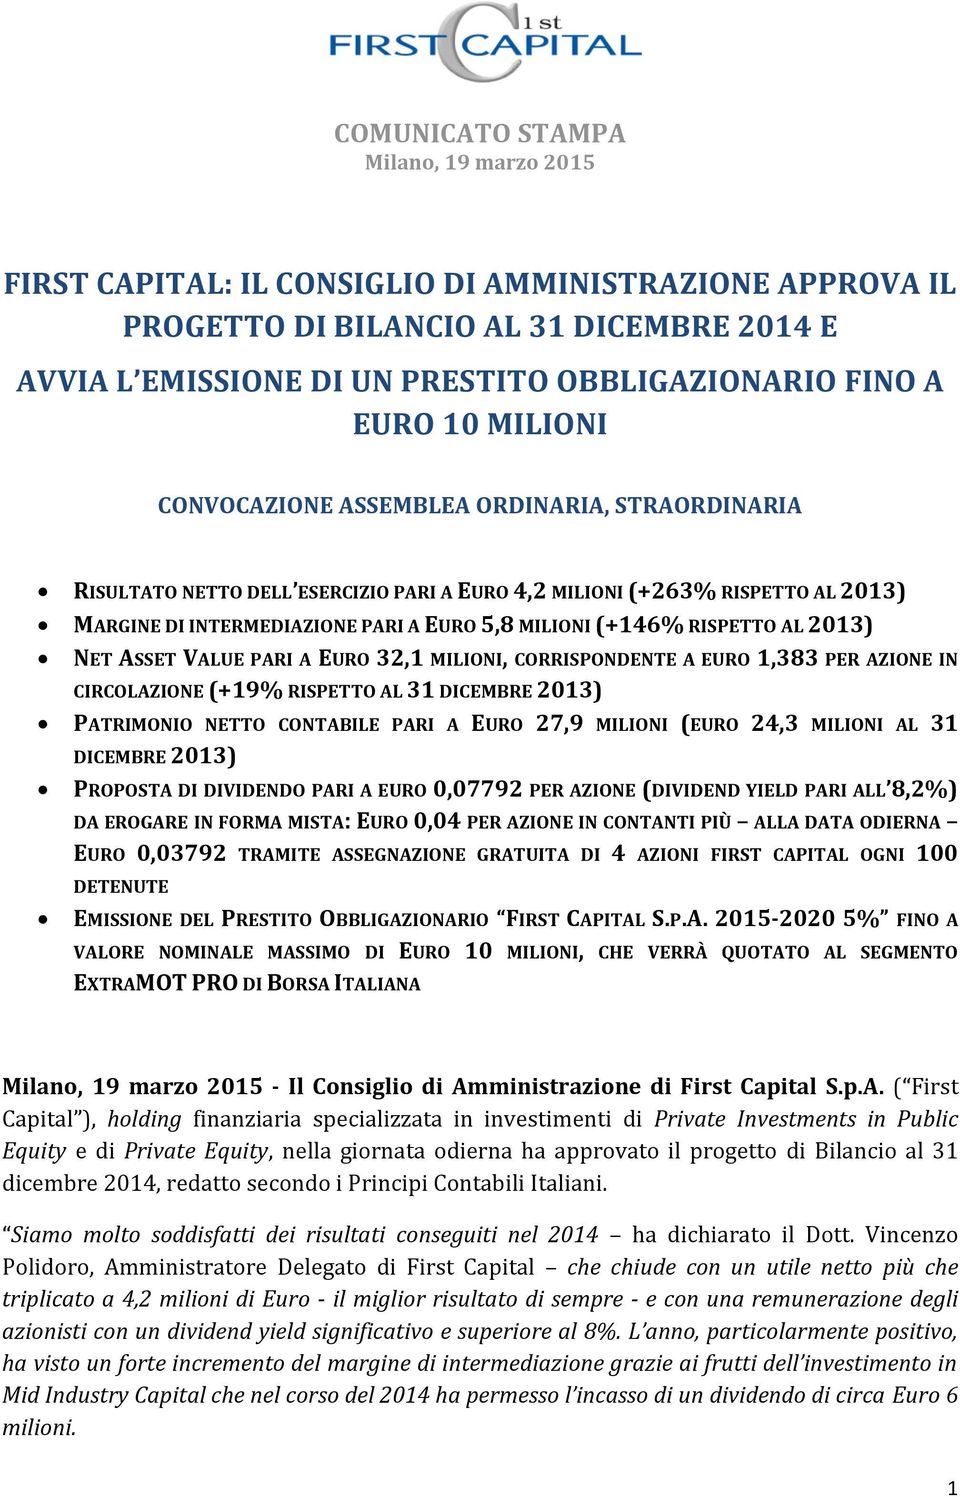 PARI A EURO 32,1 MILIONI, CORRISPONDENTE A EURO 1,383 PER AZIONE IN CIRCOLAZIONE (+19% RISPETTO AL 31 DICEMBRE 2013) PATRIMONIO NETTO CONTABILE PARI A EURO 27,9 MILIONI (EURO 24,3 MILIONI AL 31